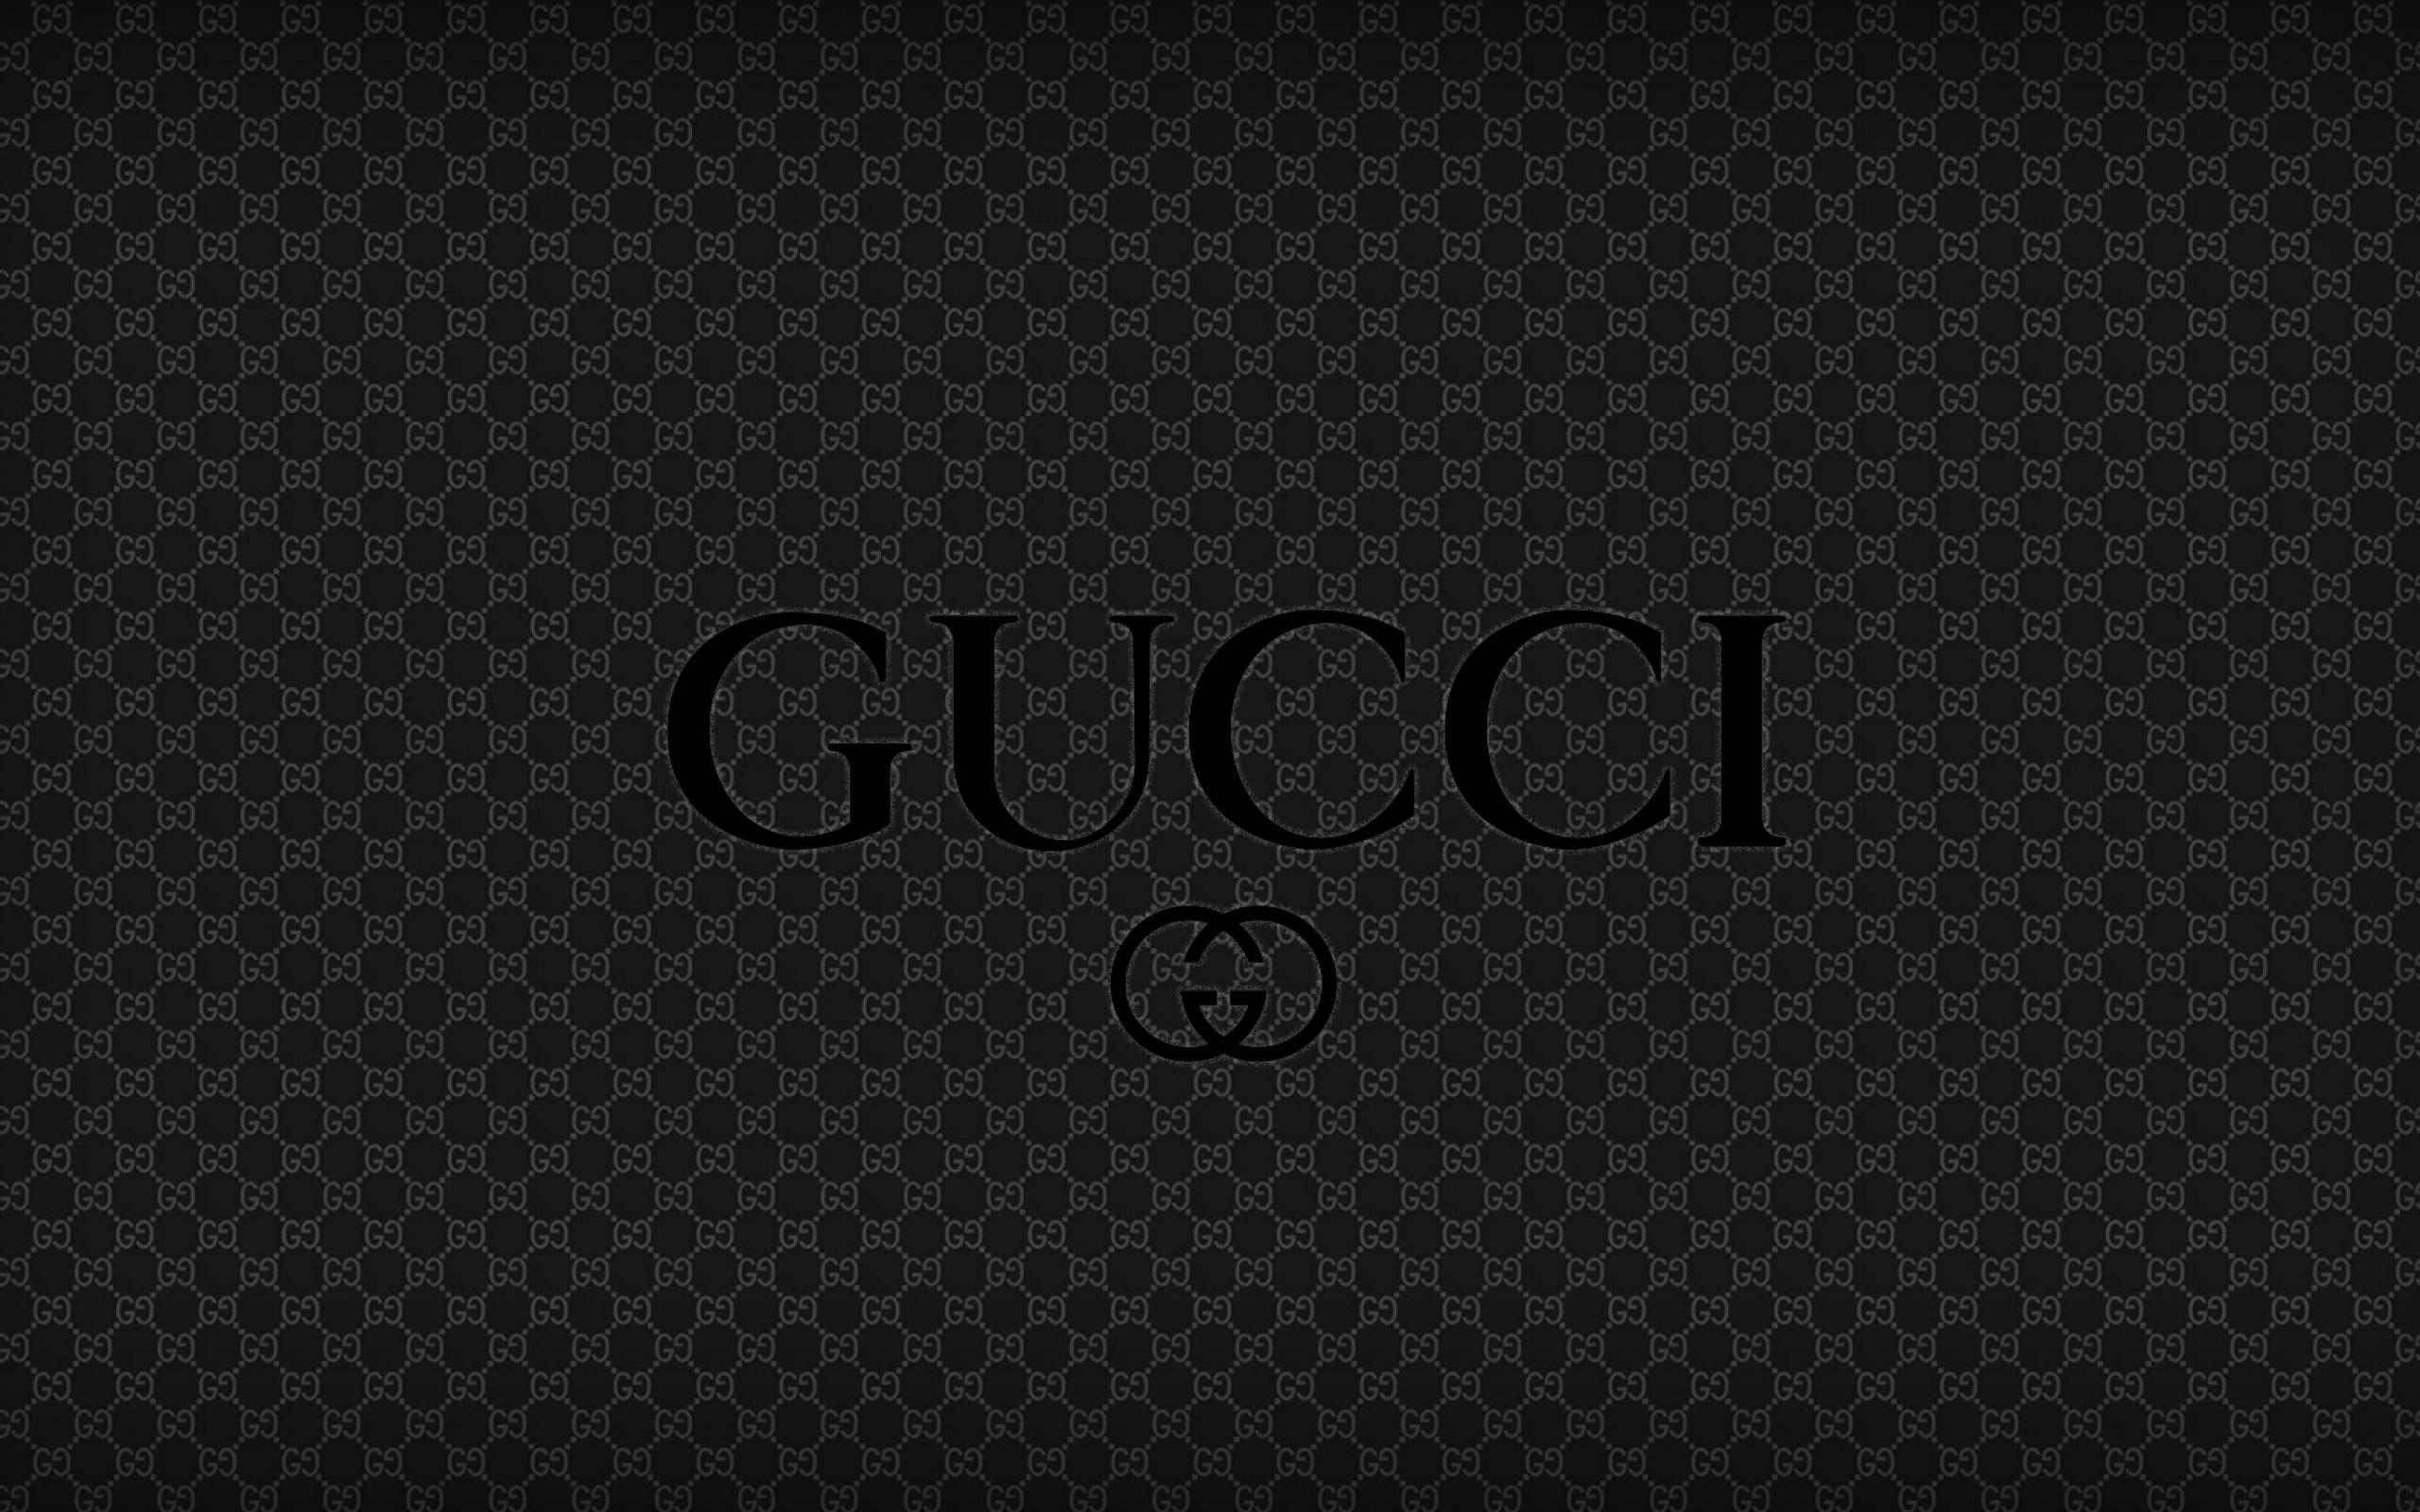 Gucci Wallpaper Hd : Gucci Hd Wallpapers - Wallpaper Cave - You can ...